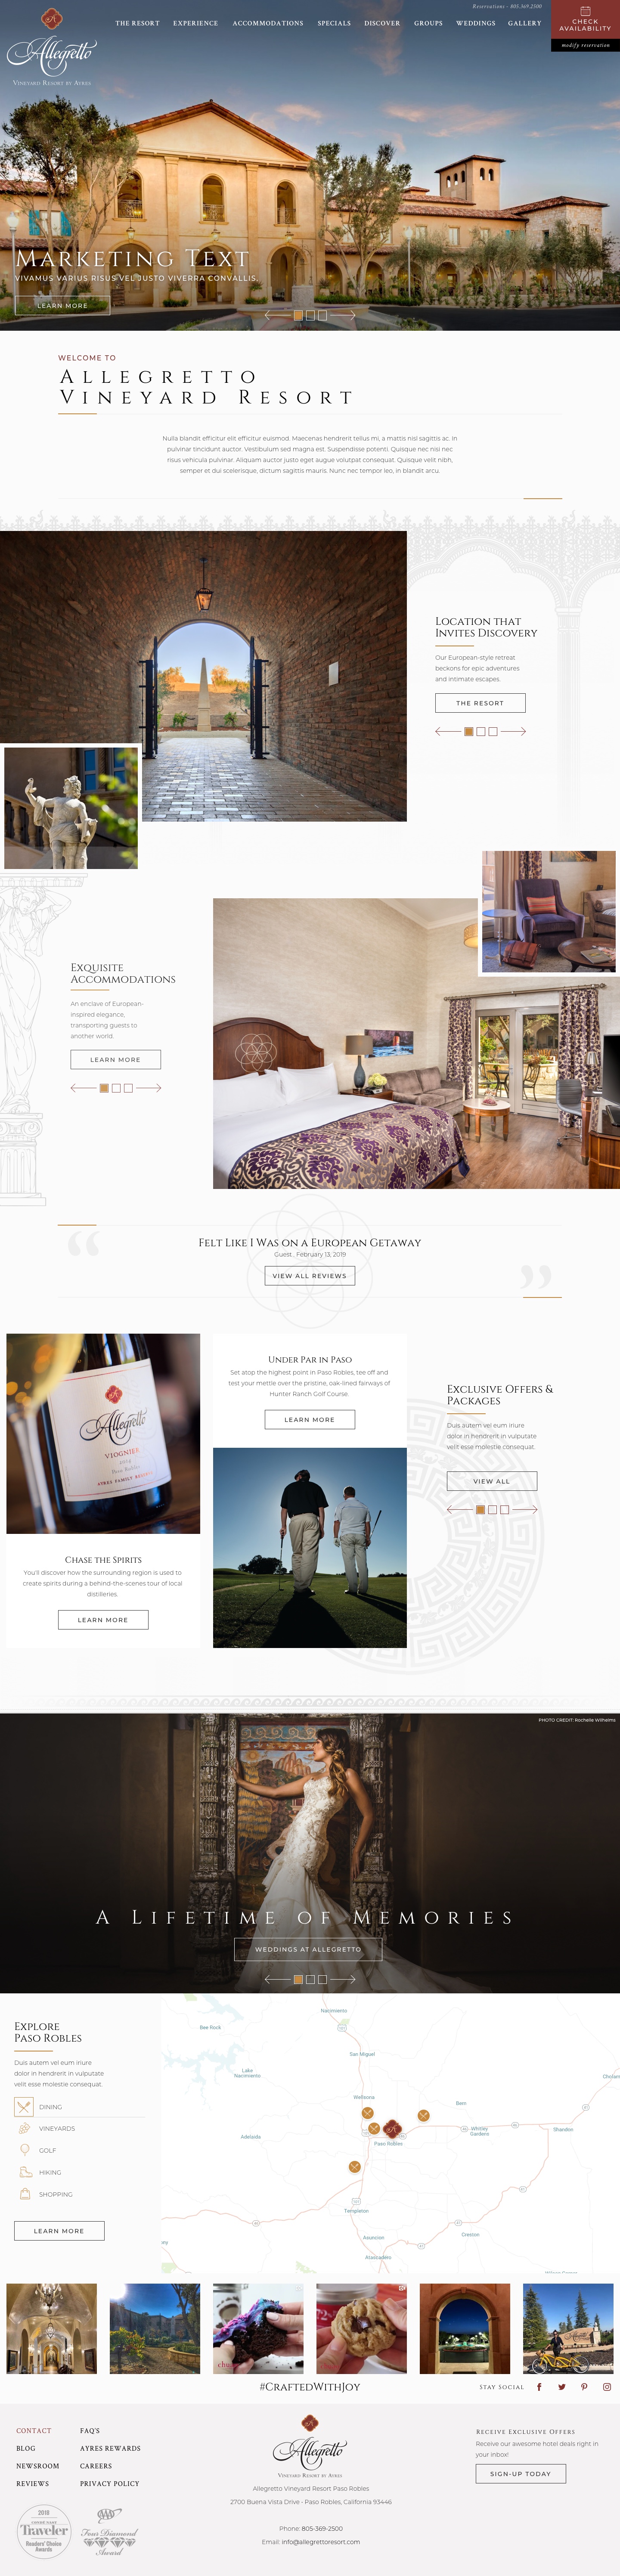 Allegretto Vineyard Resort - Home Page Design